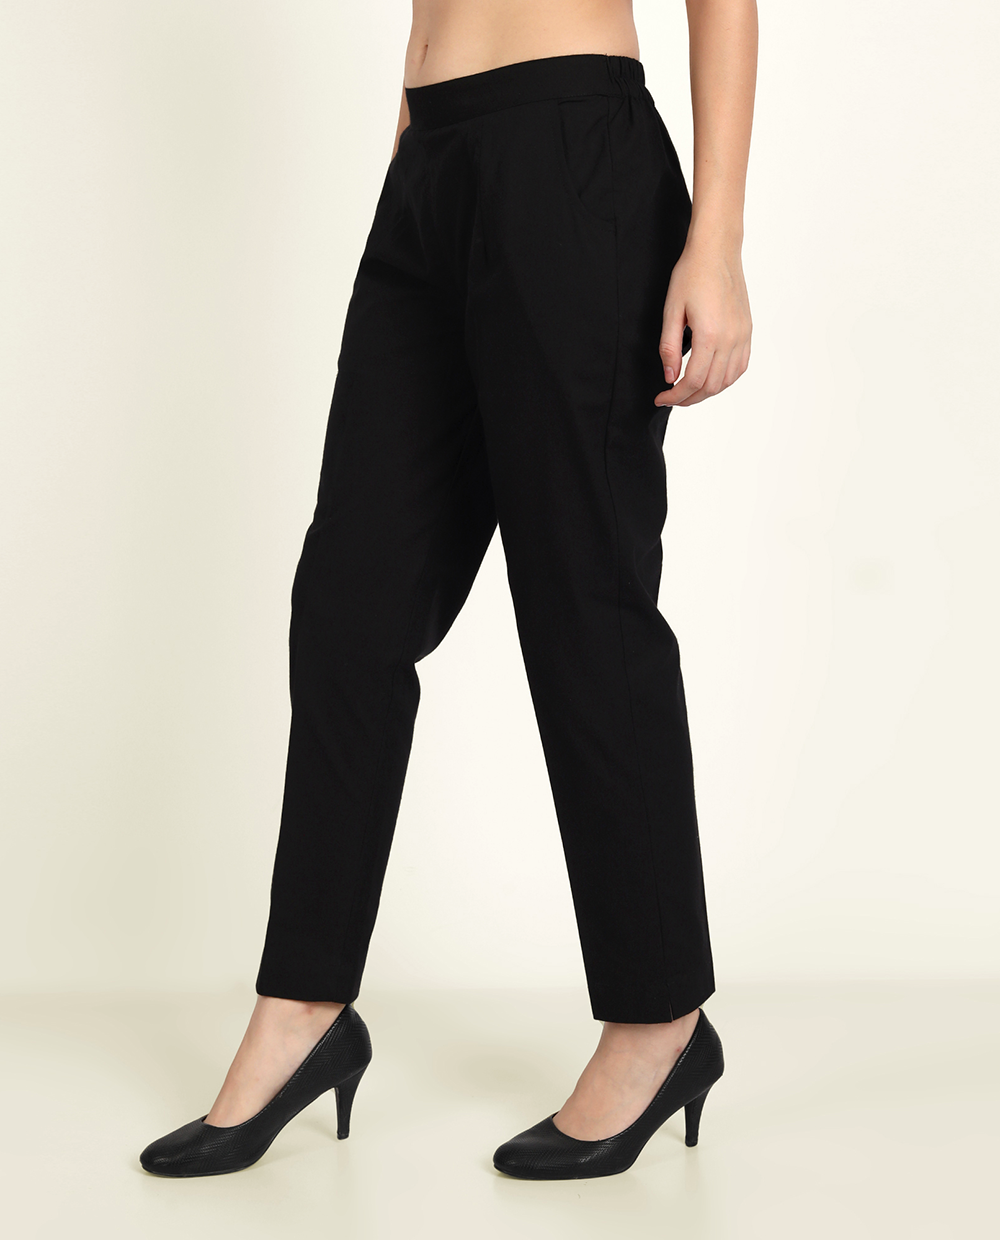 Buy Women's Black Trousers Online from Blissclub